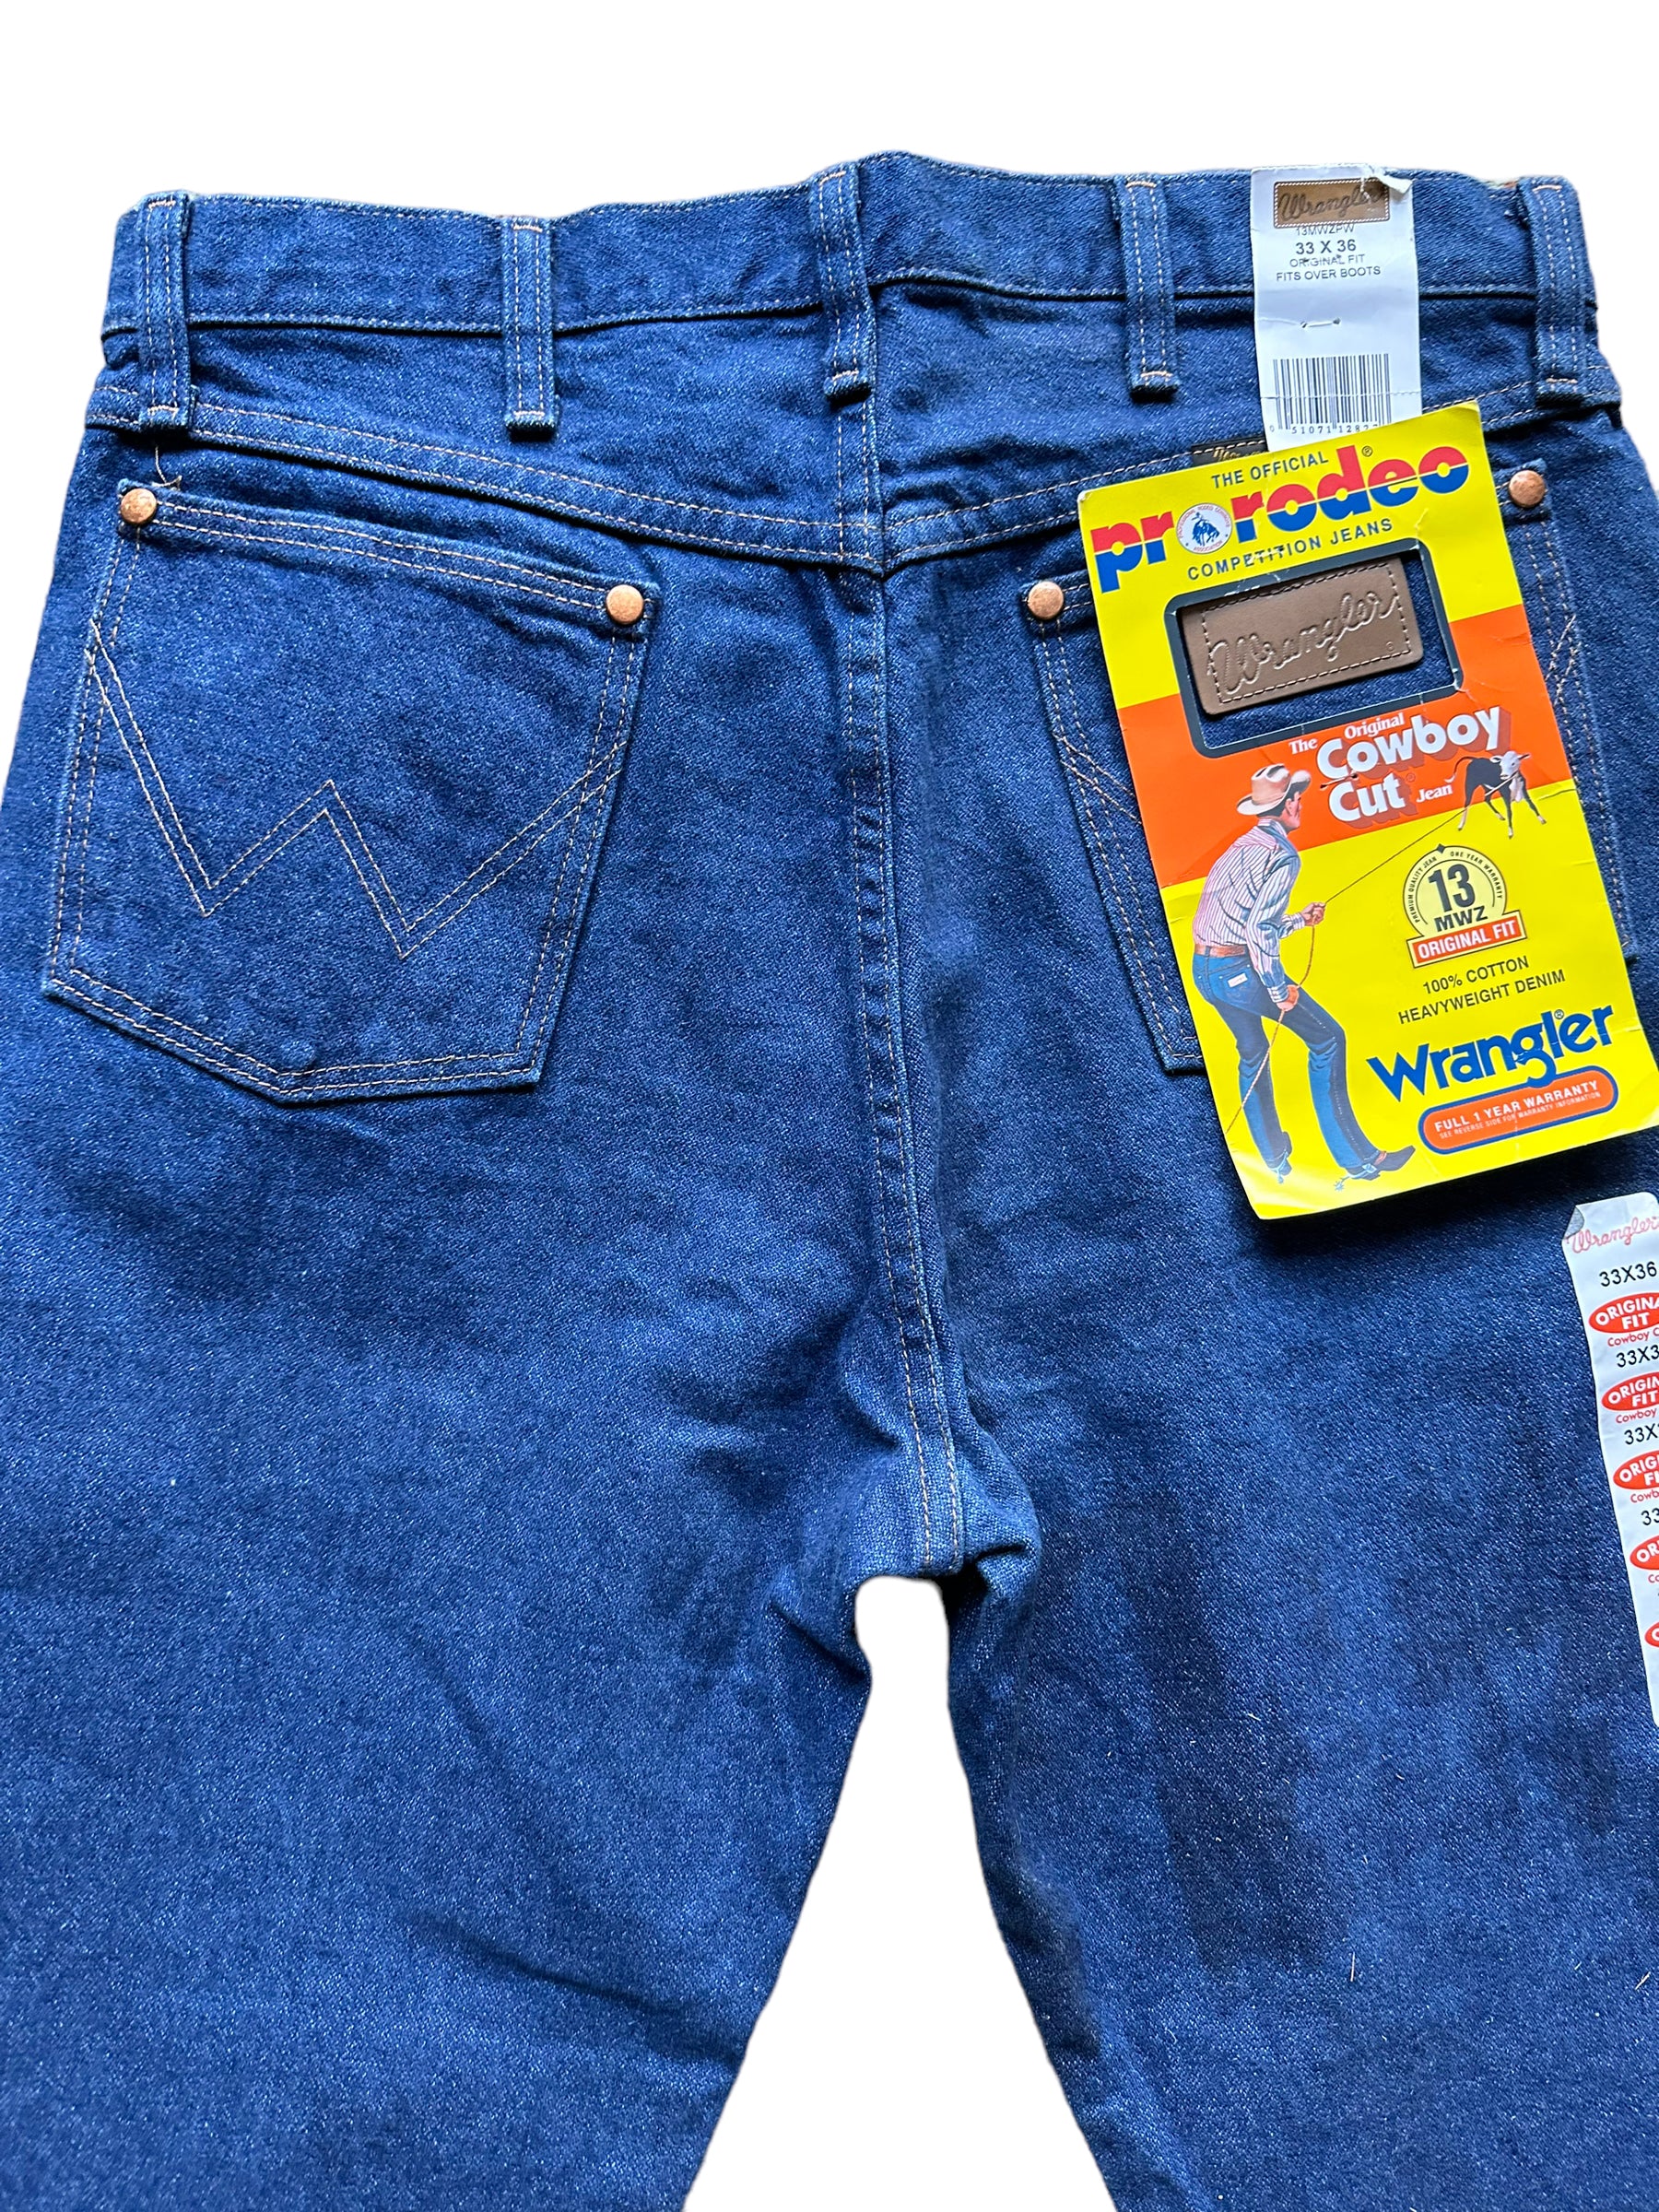 Back pockets view of Vintage 90s Deadstock Wrangler Cowboy Cut Denim 33x36 | Seattle Vintage Jeans | Barn Owl Vintage